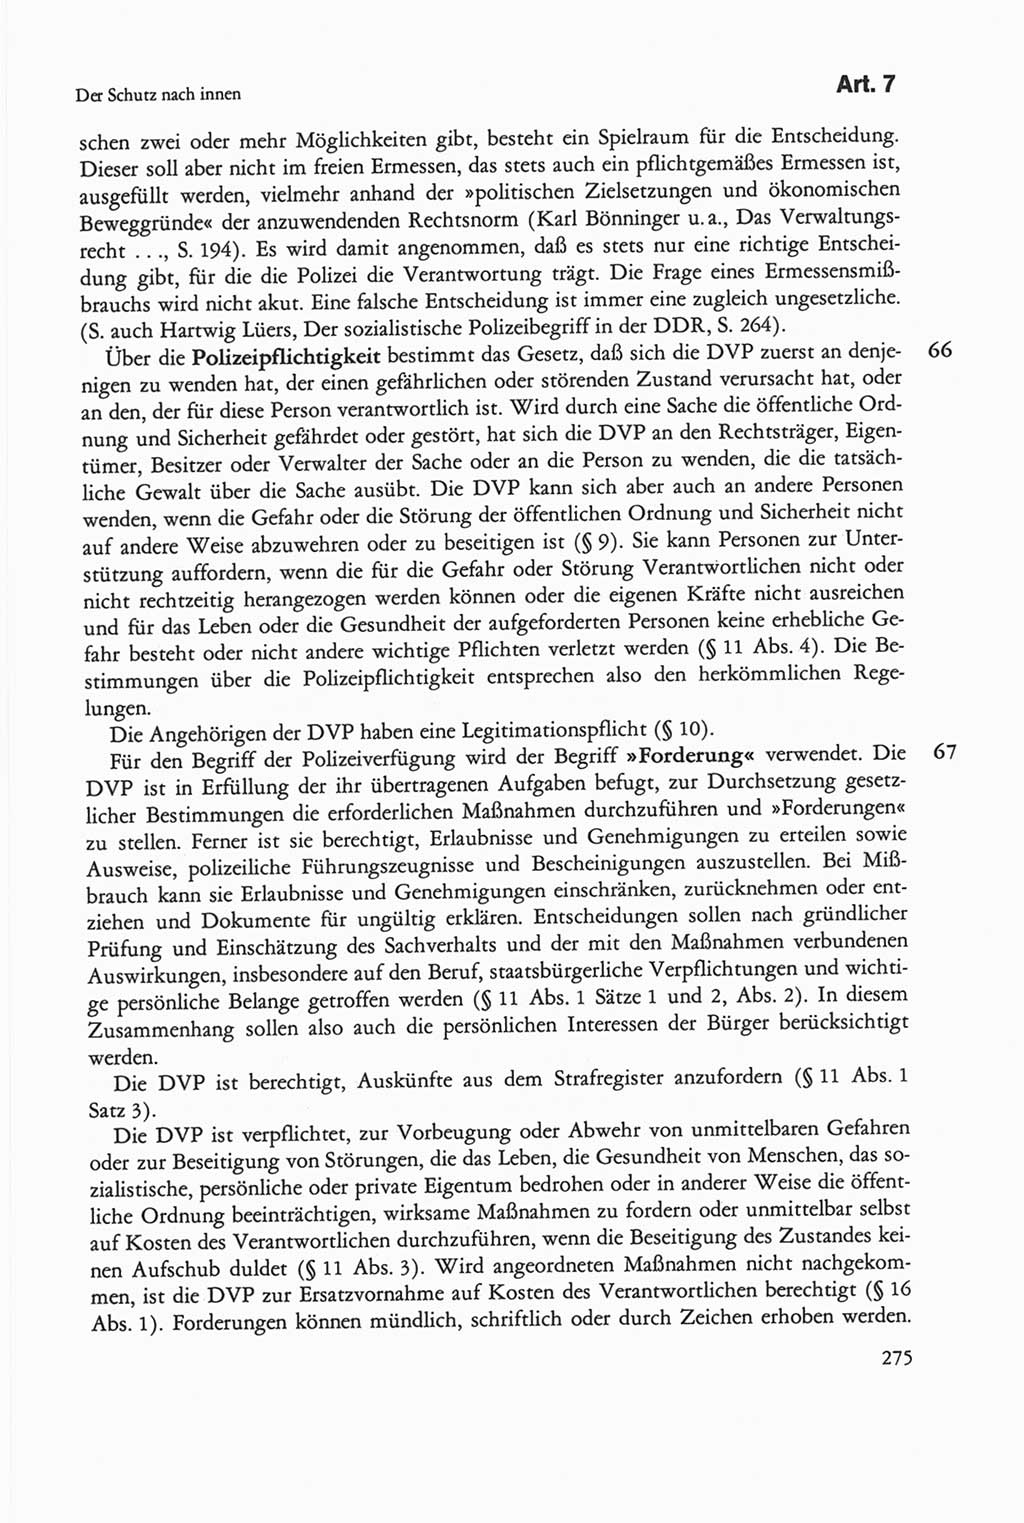 Die sozialistische Verfassung der Deutschen Demokratischen Republik (DDR), Kommentar 1982, Seite 275 (Soz. Verf. DDR Komm. 1982, S. 275)